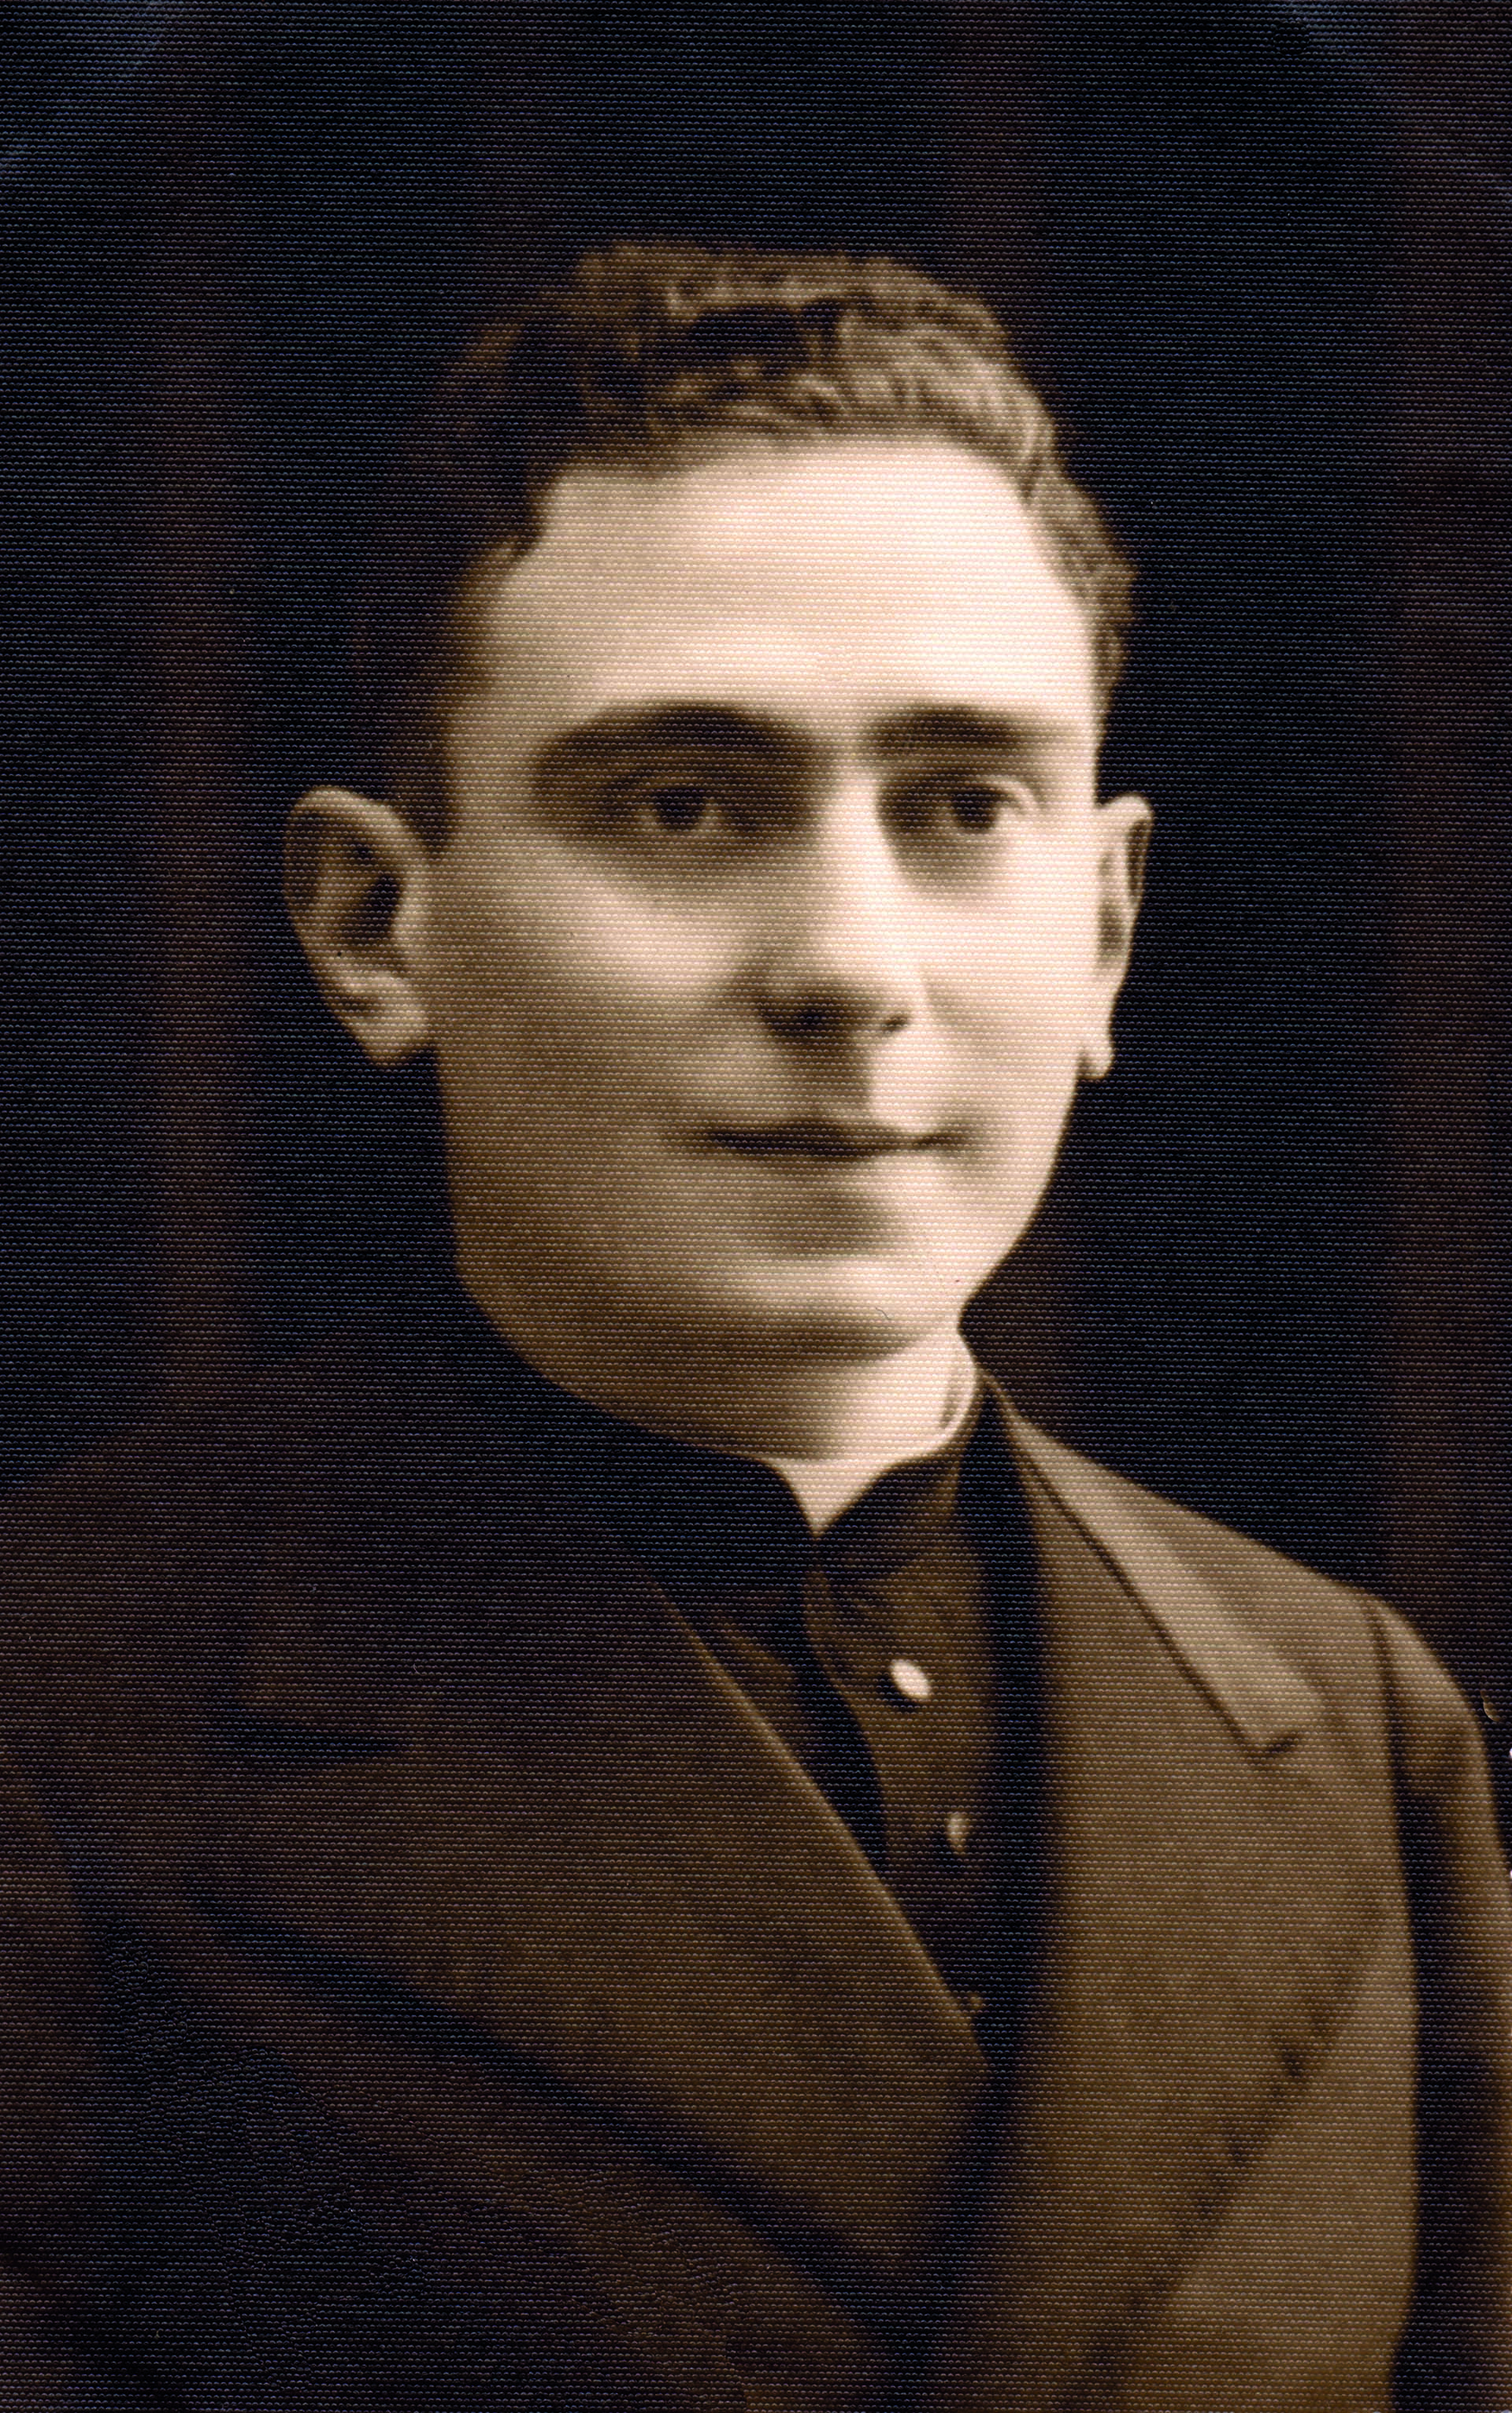 Pironio fue ordenado sacerdote el 5 de diciembre de 1943 en la Basílica de Luján (Foto: Acción Católica Argentina)